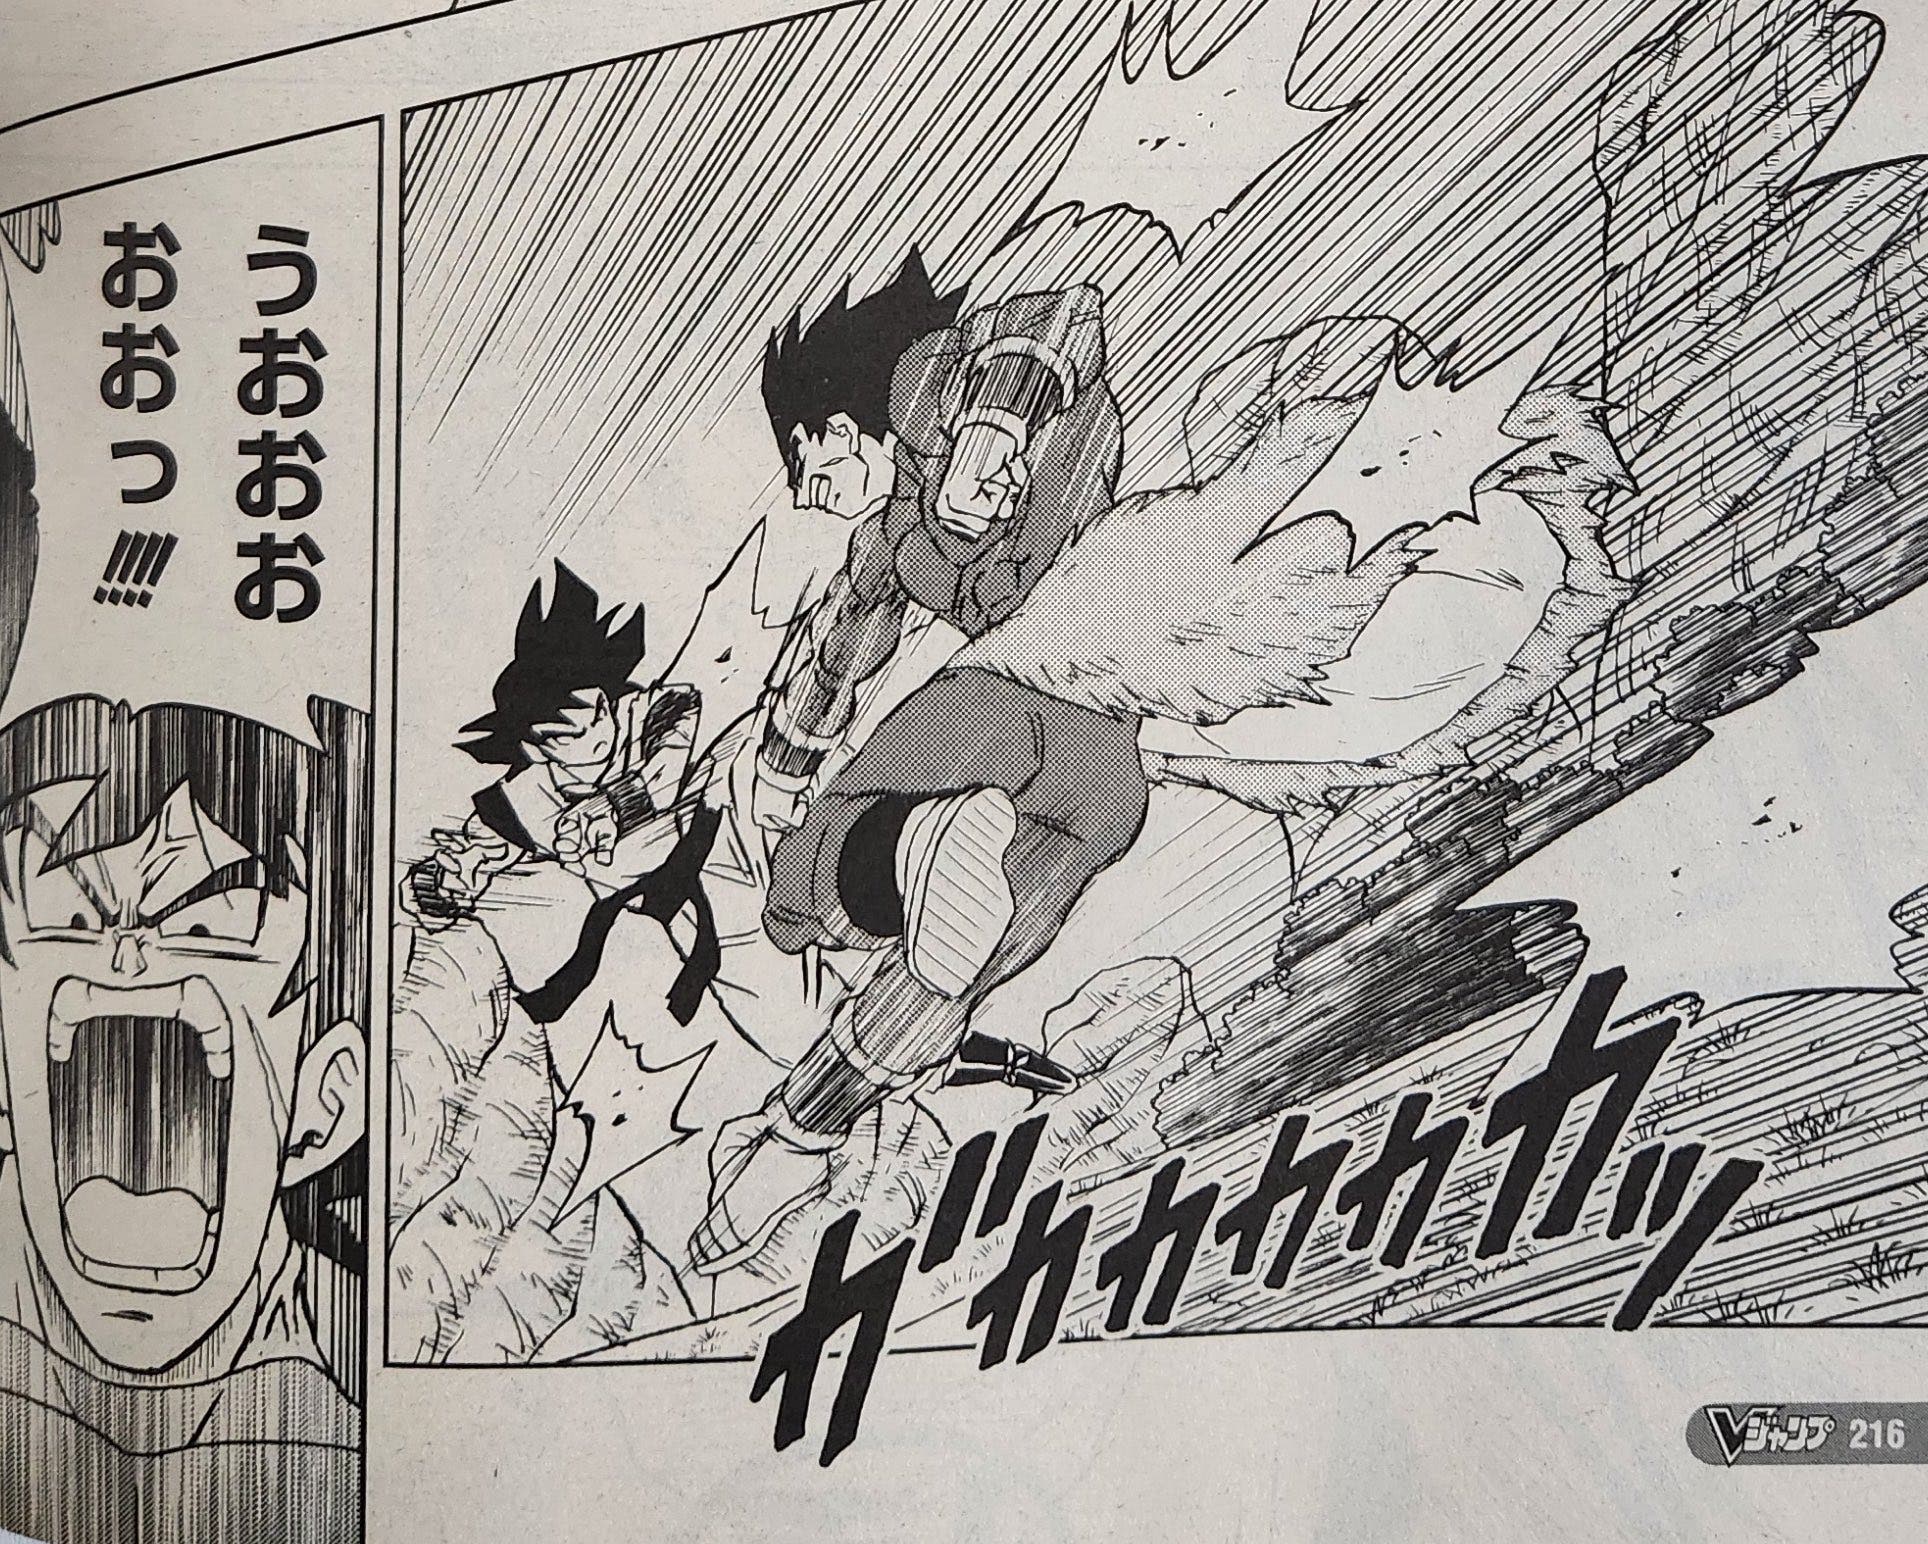 Dragon Ball Super: ¿Cuándo se estrena el capítulo 92 del manga